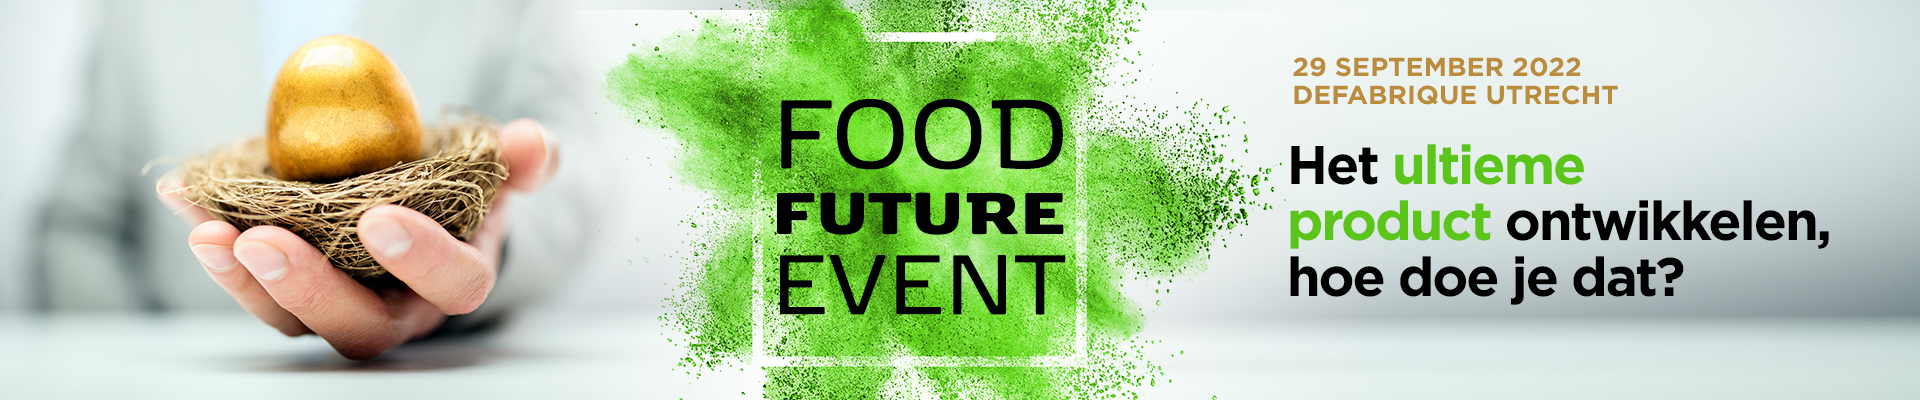 Food Future Event 2022